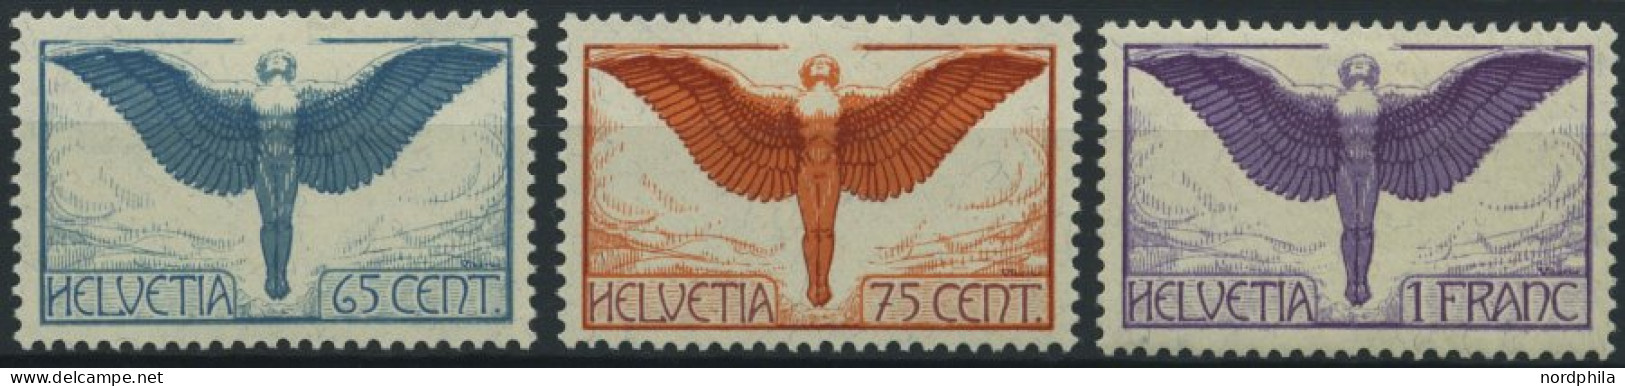 SCHWEIZ BUNDESPOST 189-91x , 1924, Flugpostmarken, Gewöhnliches Papier, Falzrest, Prachtsatz - Ungebraucht